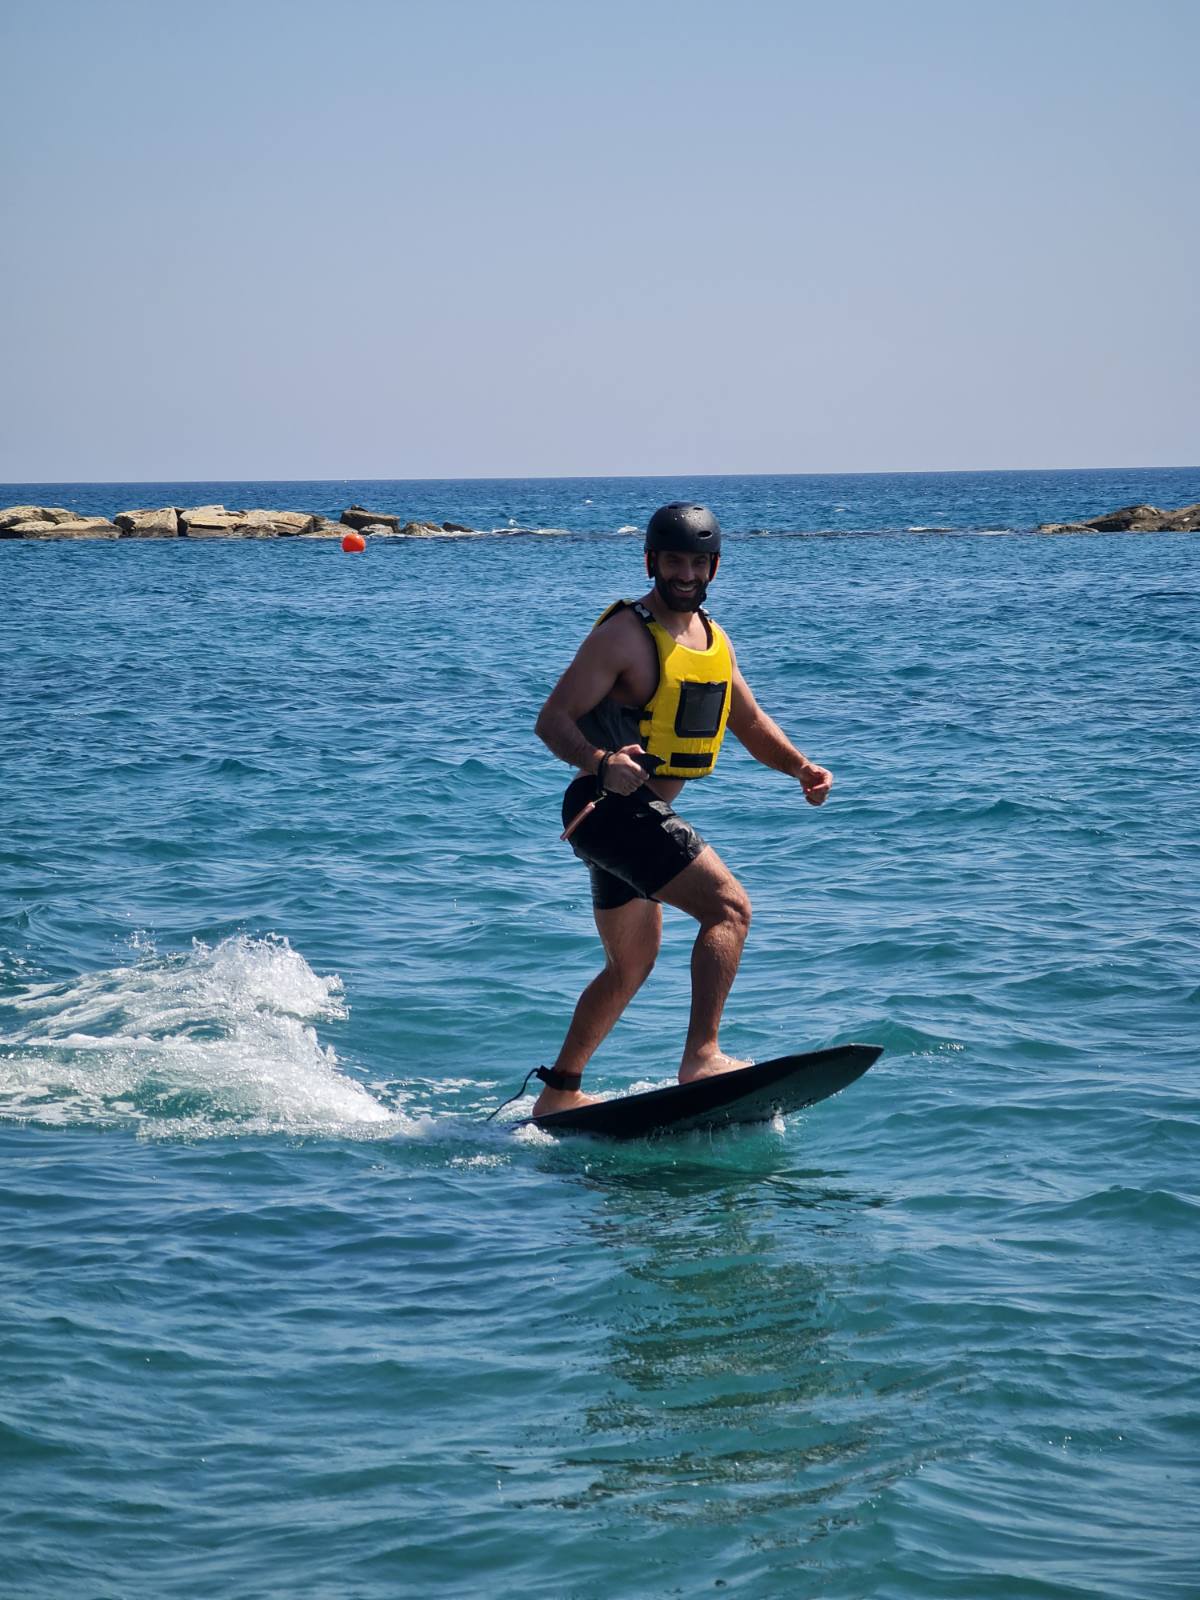 BIOZEUS FULL CARBON FIBRE EFOIL SURFBOARD ELECTRIC HYDROFOIL SURF BOARD - Biozeus fitness 